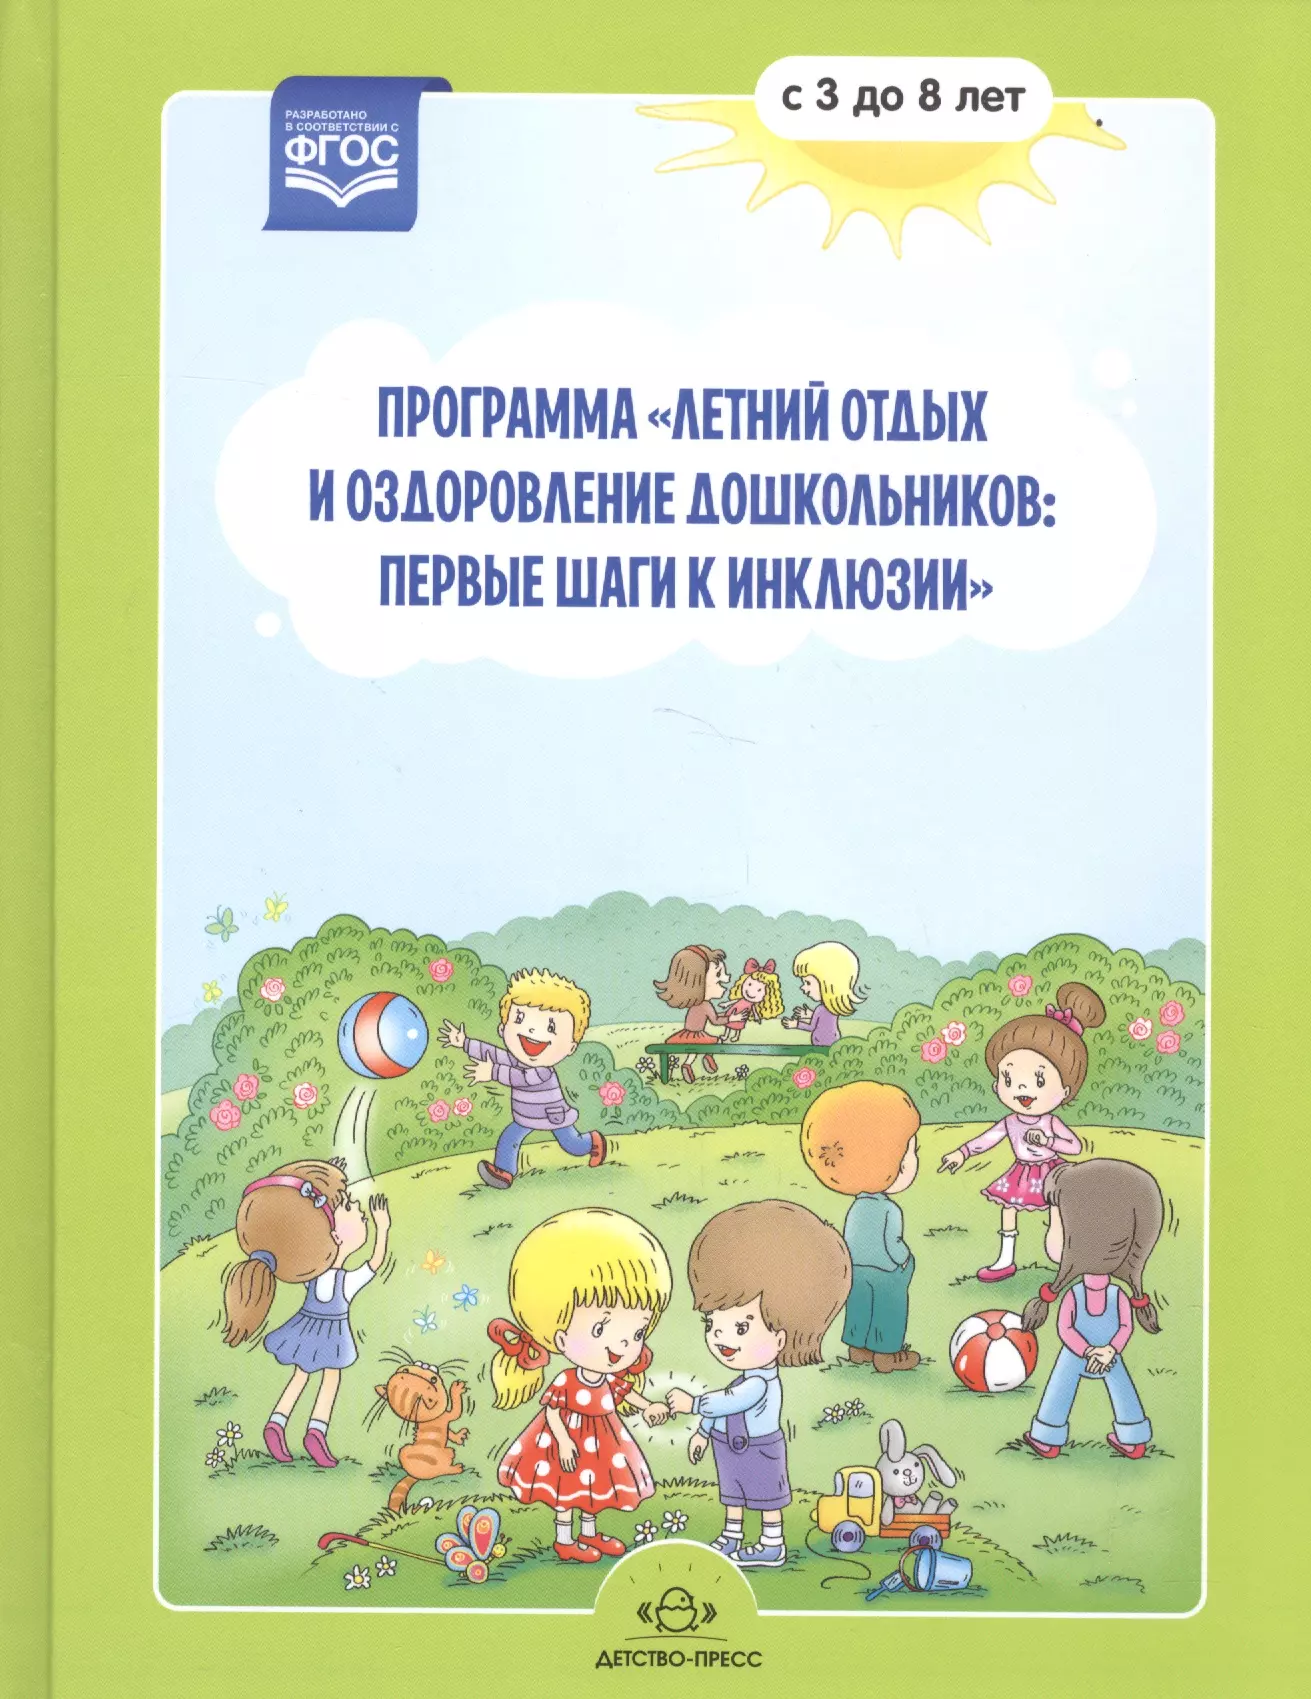 Матвеева Н. Г. - Программа "Летний отдых и оздоровление дошкольников: первые шаги к инклюзии" с 3 до 8 лет